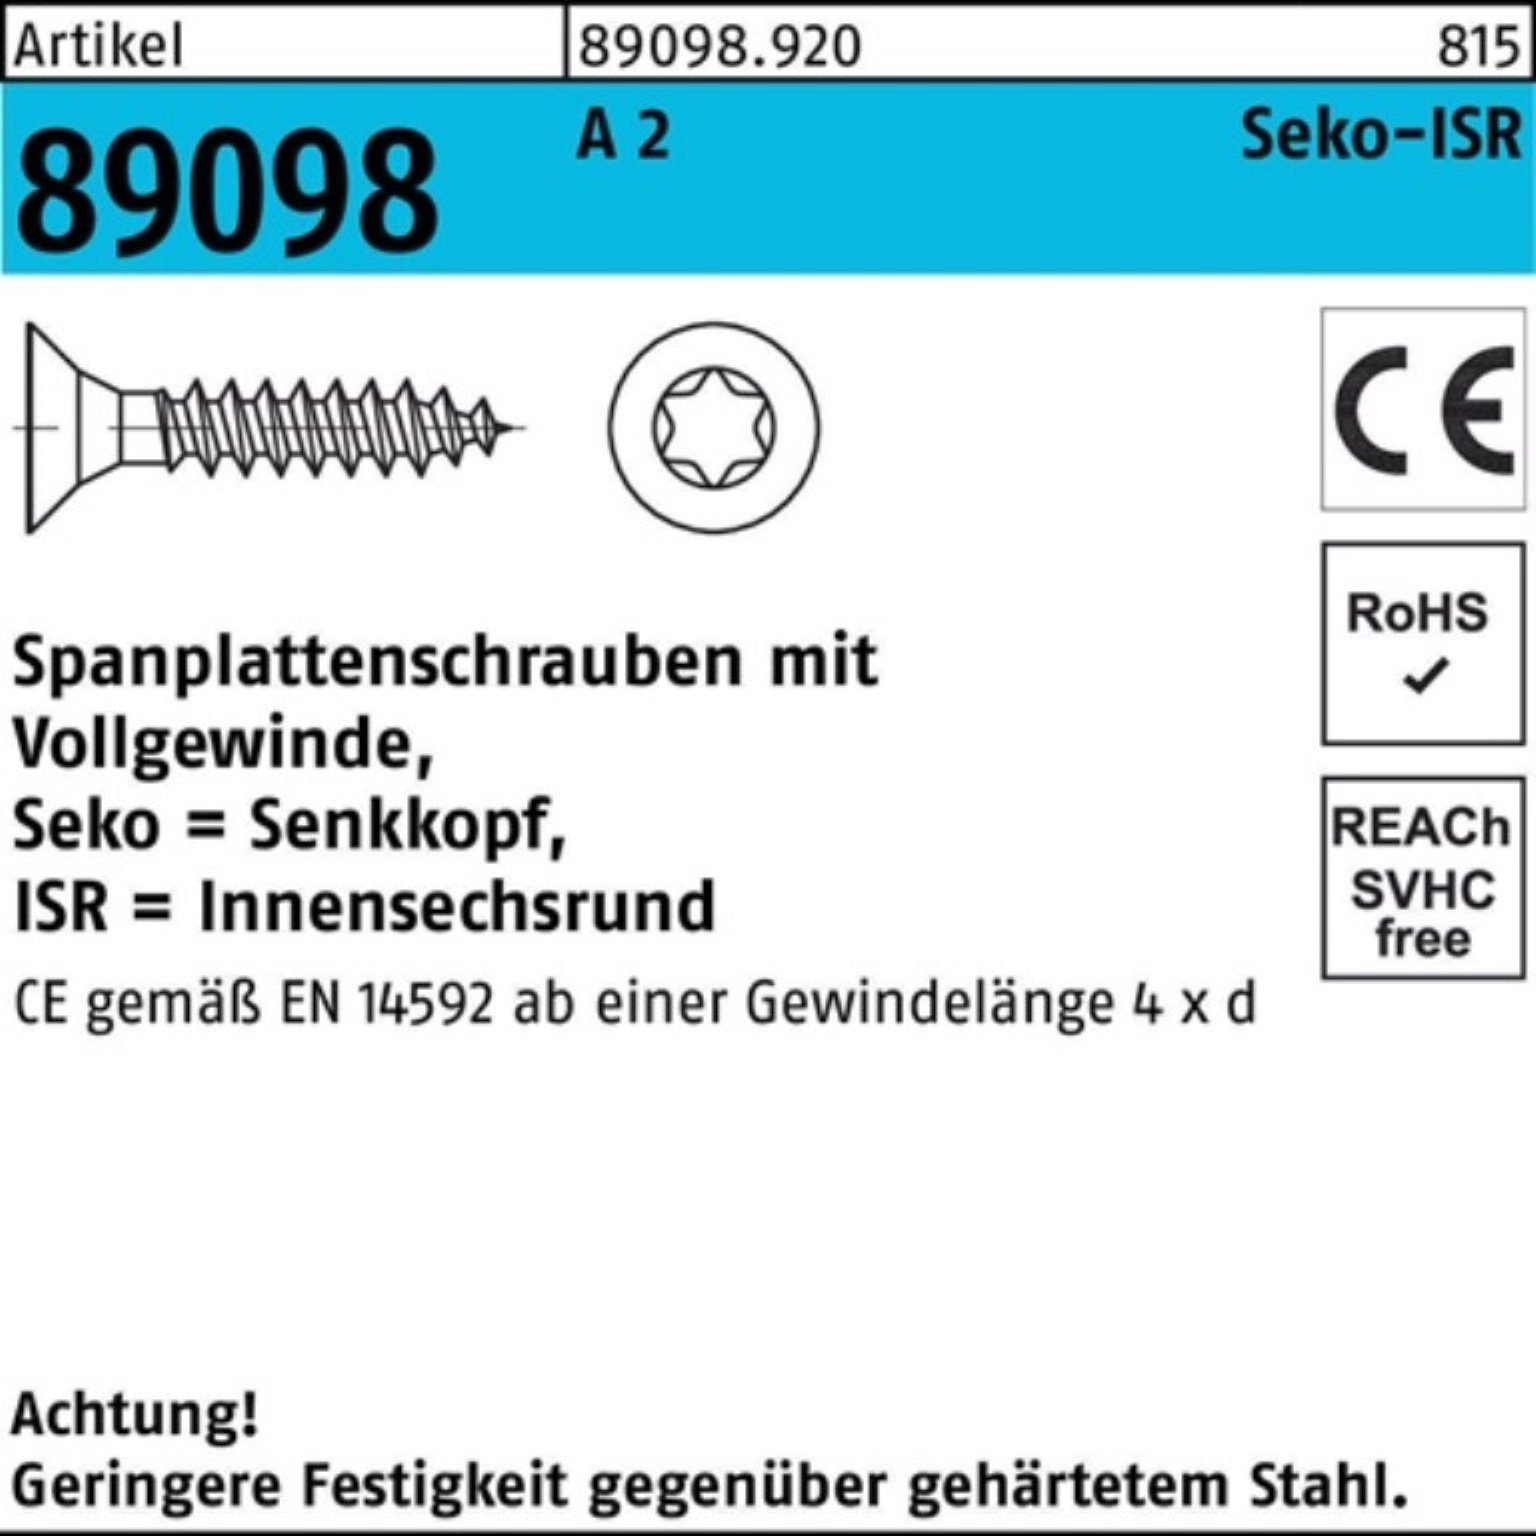 Reyher Spanplattenschraube 1000er Pack Spanplattenschraube R 89098 SEKO ISR VG 3x 40-T10 A 2 1000